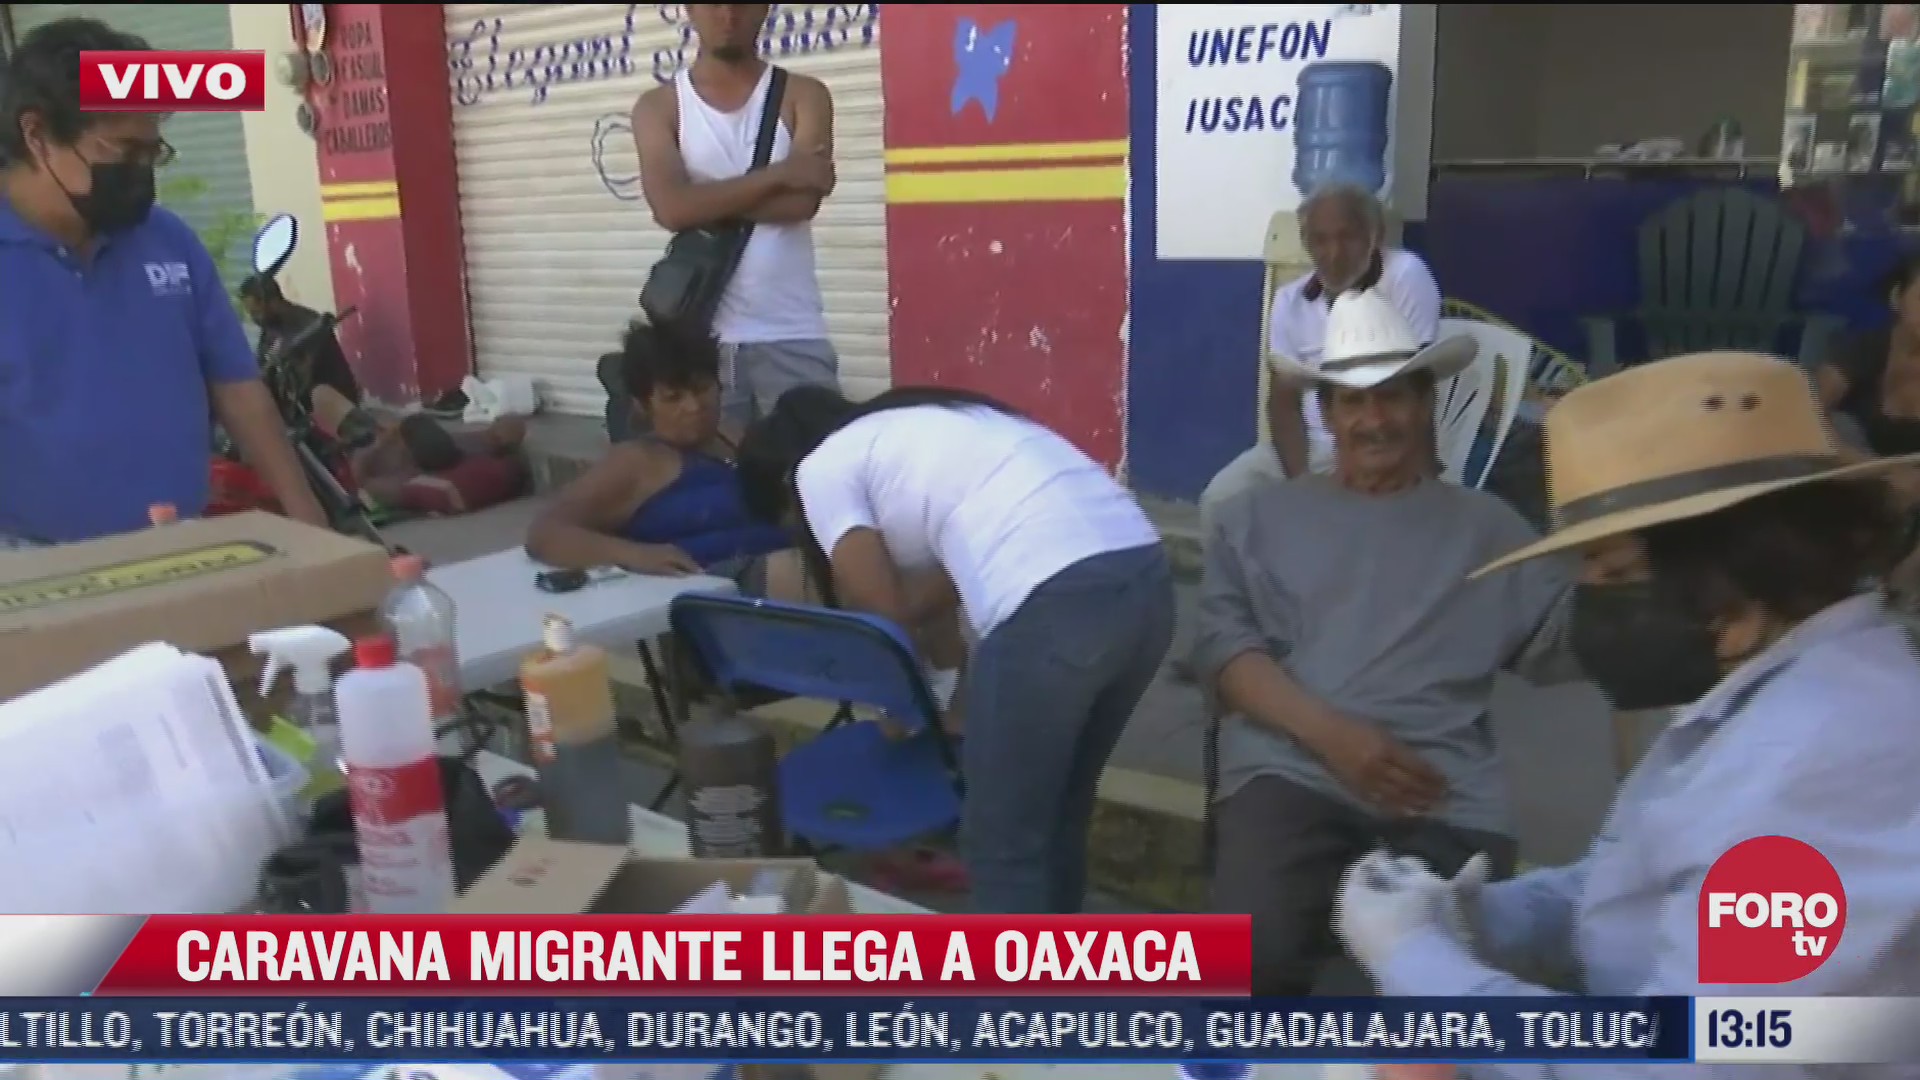 medicos atienden a migrantes lesionados en oaxaca